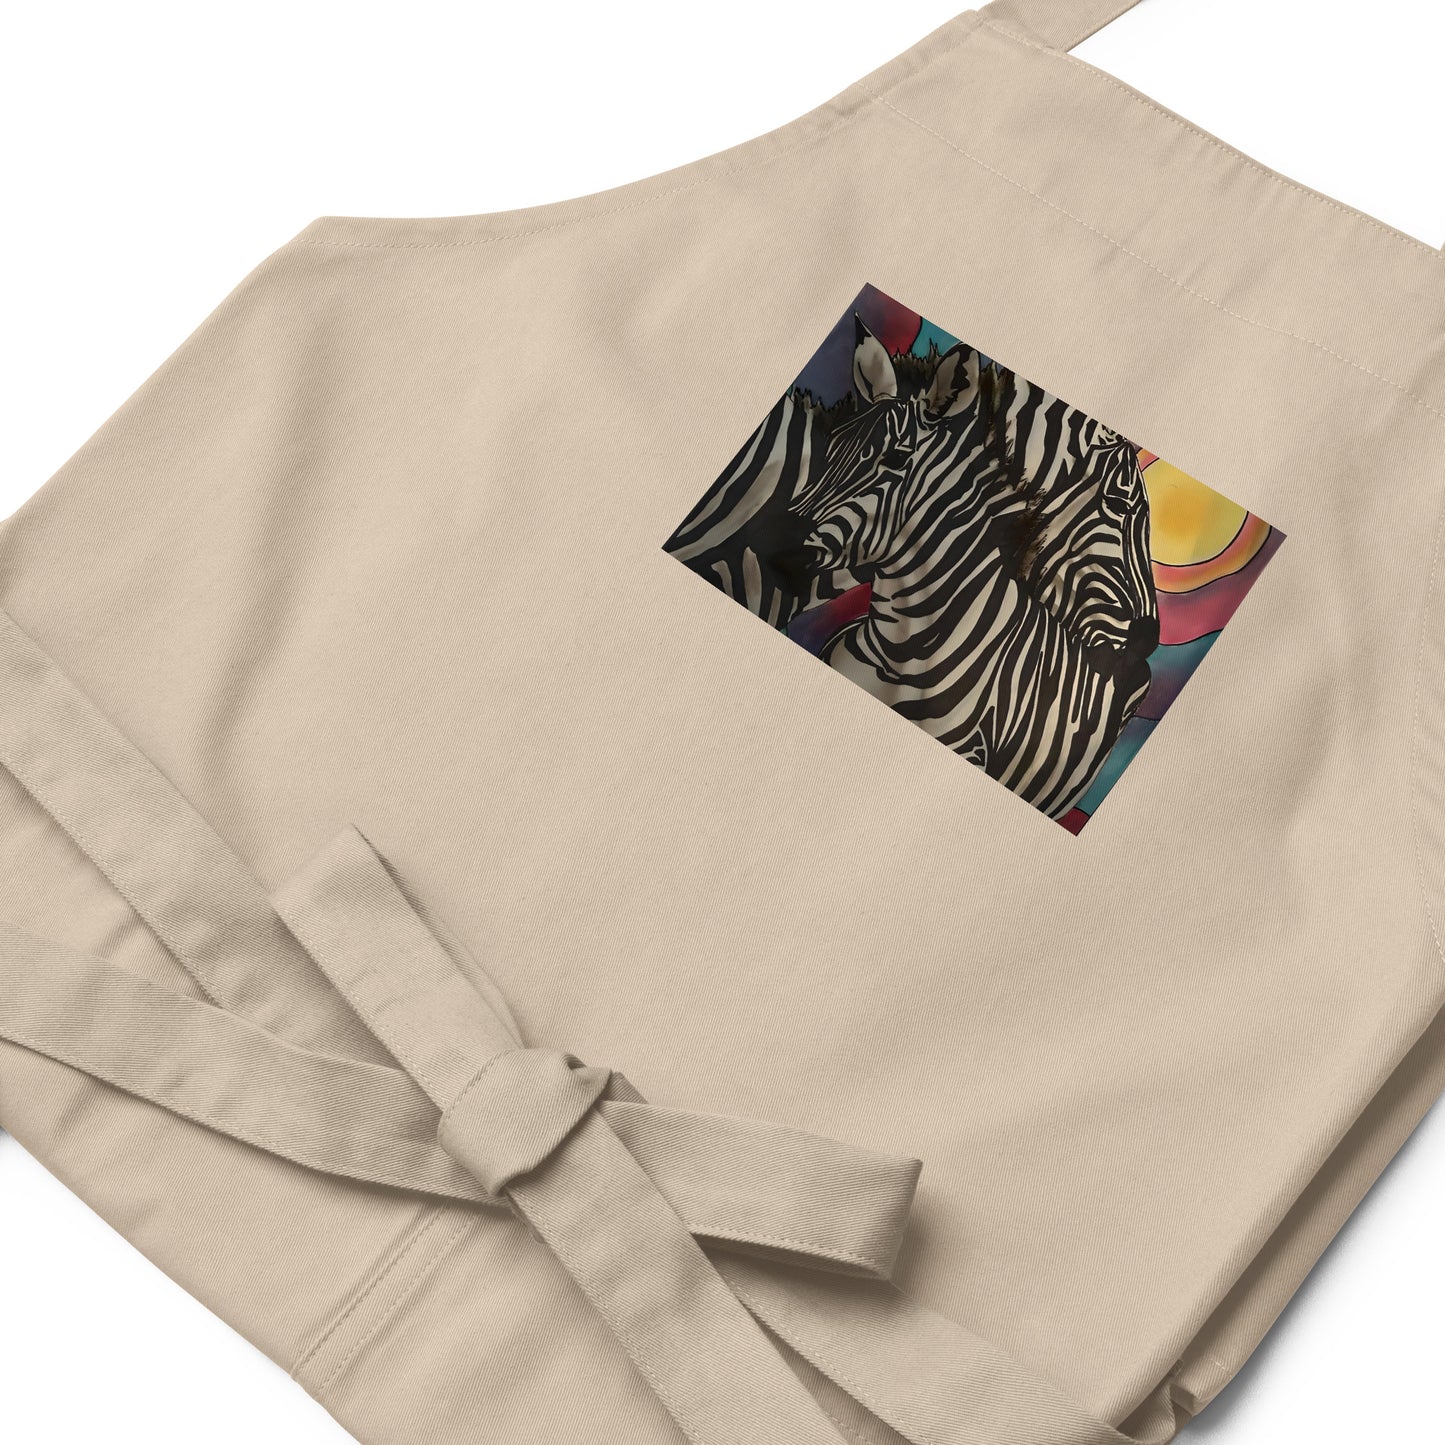 Zebras in the Sun Organic cotton apron